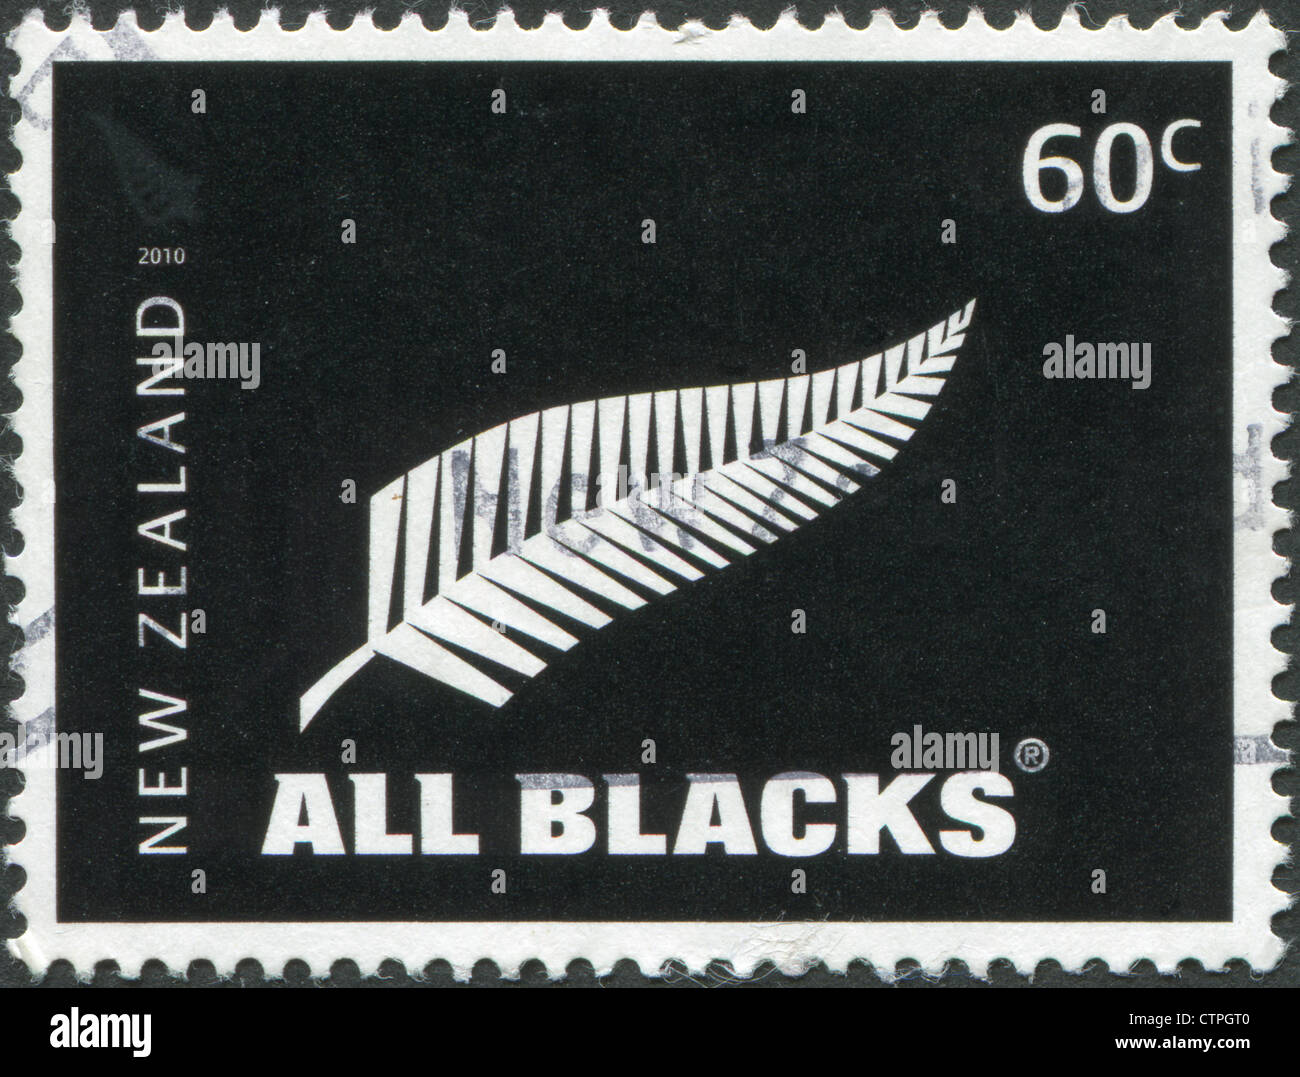 Briefmarken gedruckt in Neuseeland, zeigt das Emblem der All Blacks - New  Zealand Rugby union-Nationalmannschaft, ca. 2010 Stockfotografie - Alamy